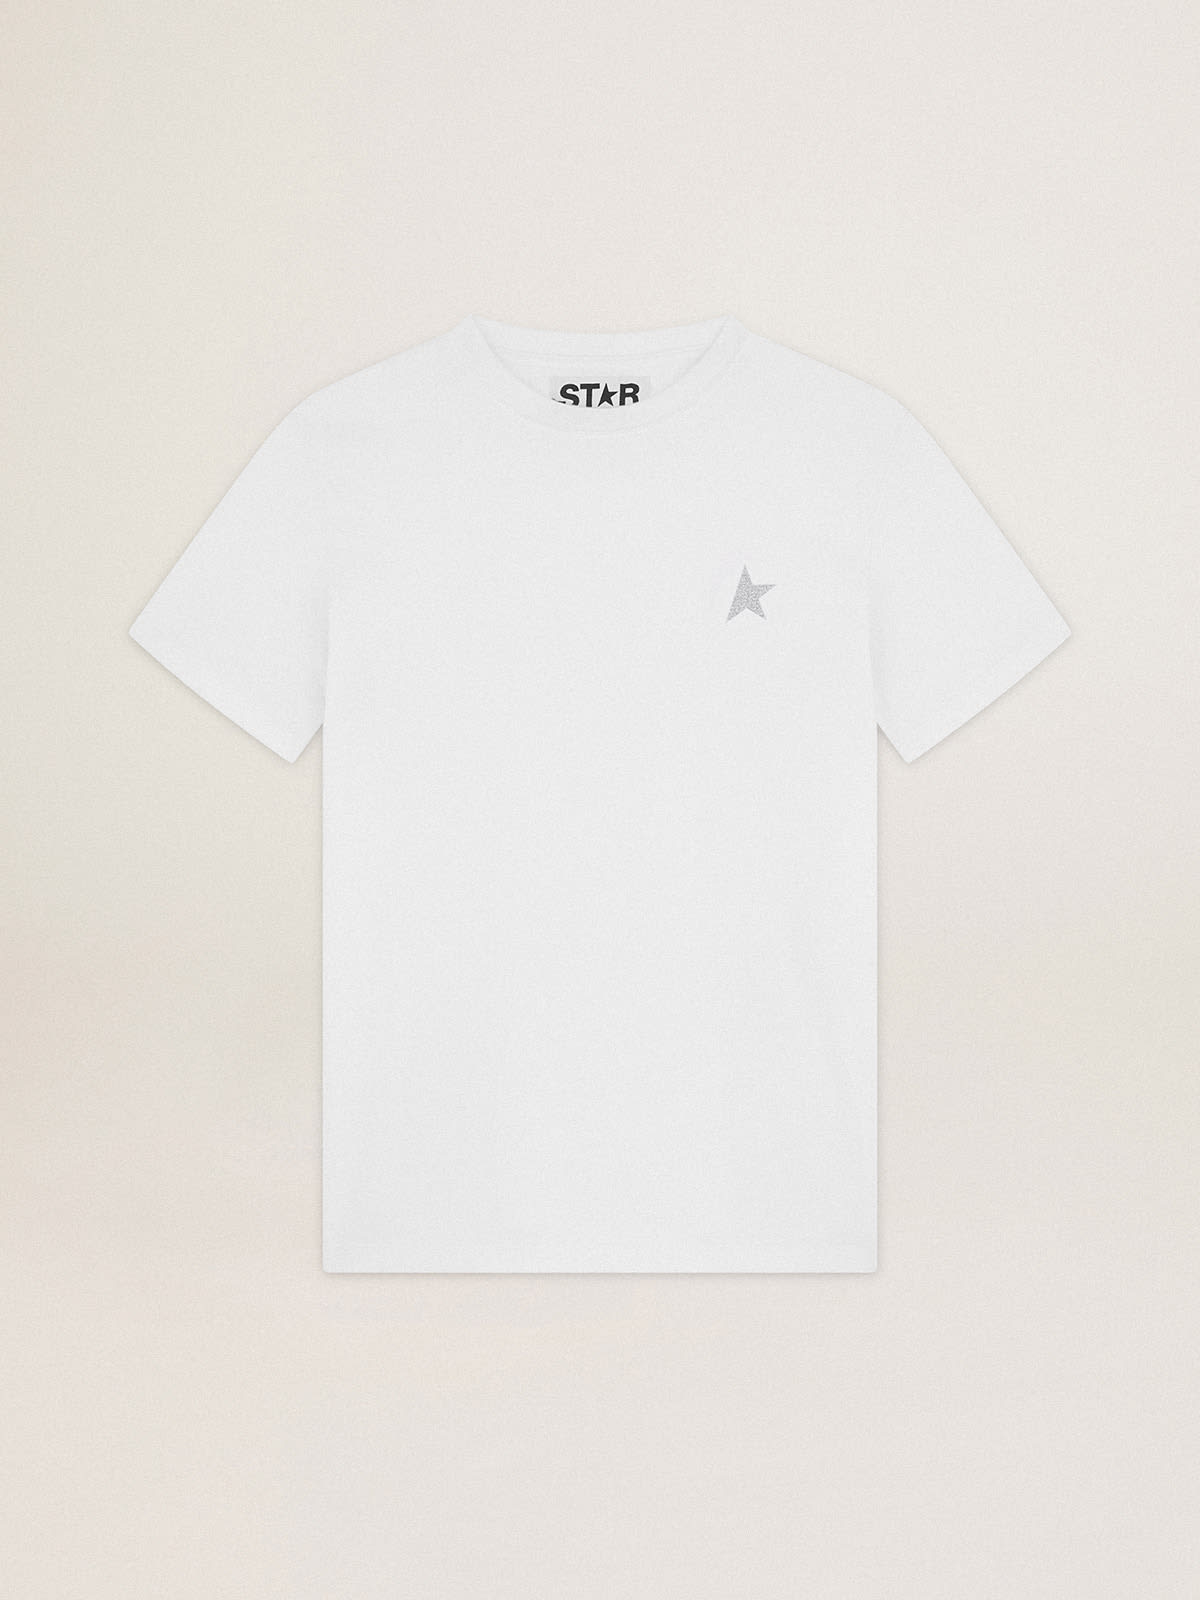 Golden Goose - T-shirt blanc collection Star avec étoile à paillettes argentées sur le devant in 